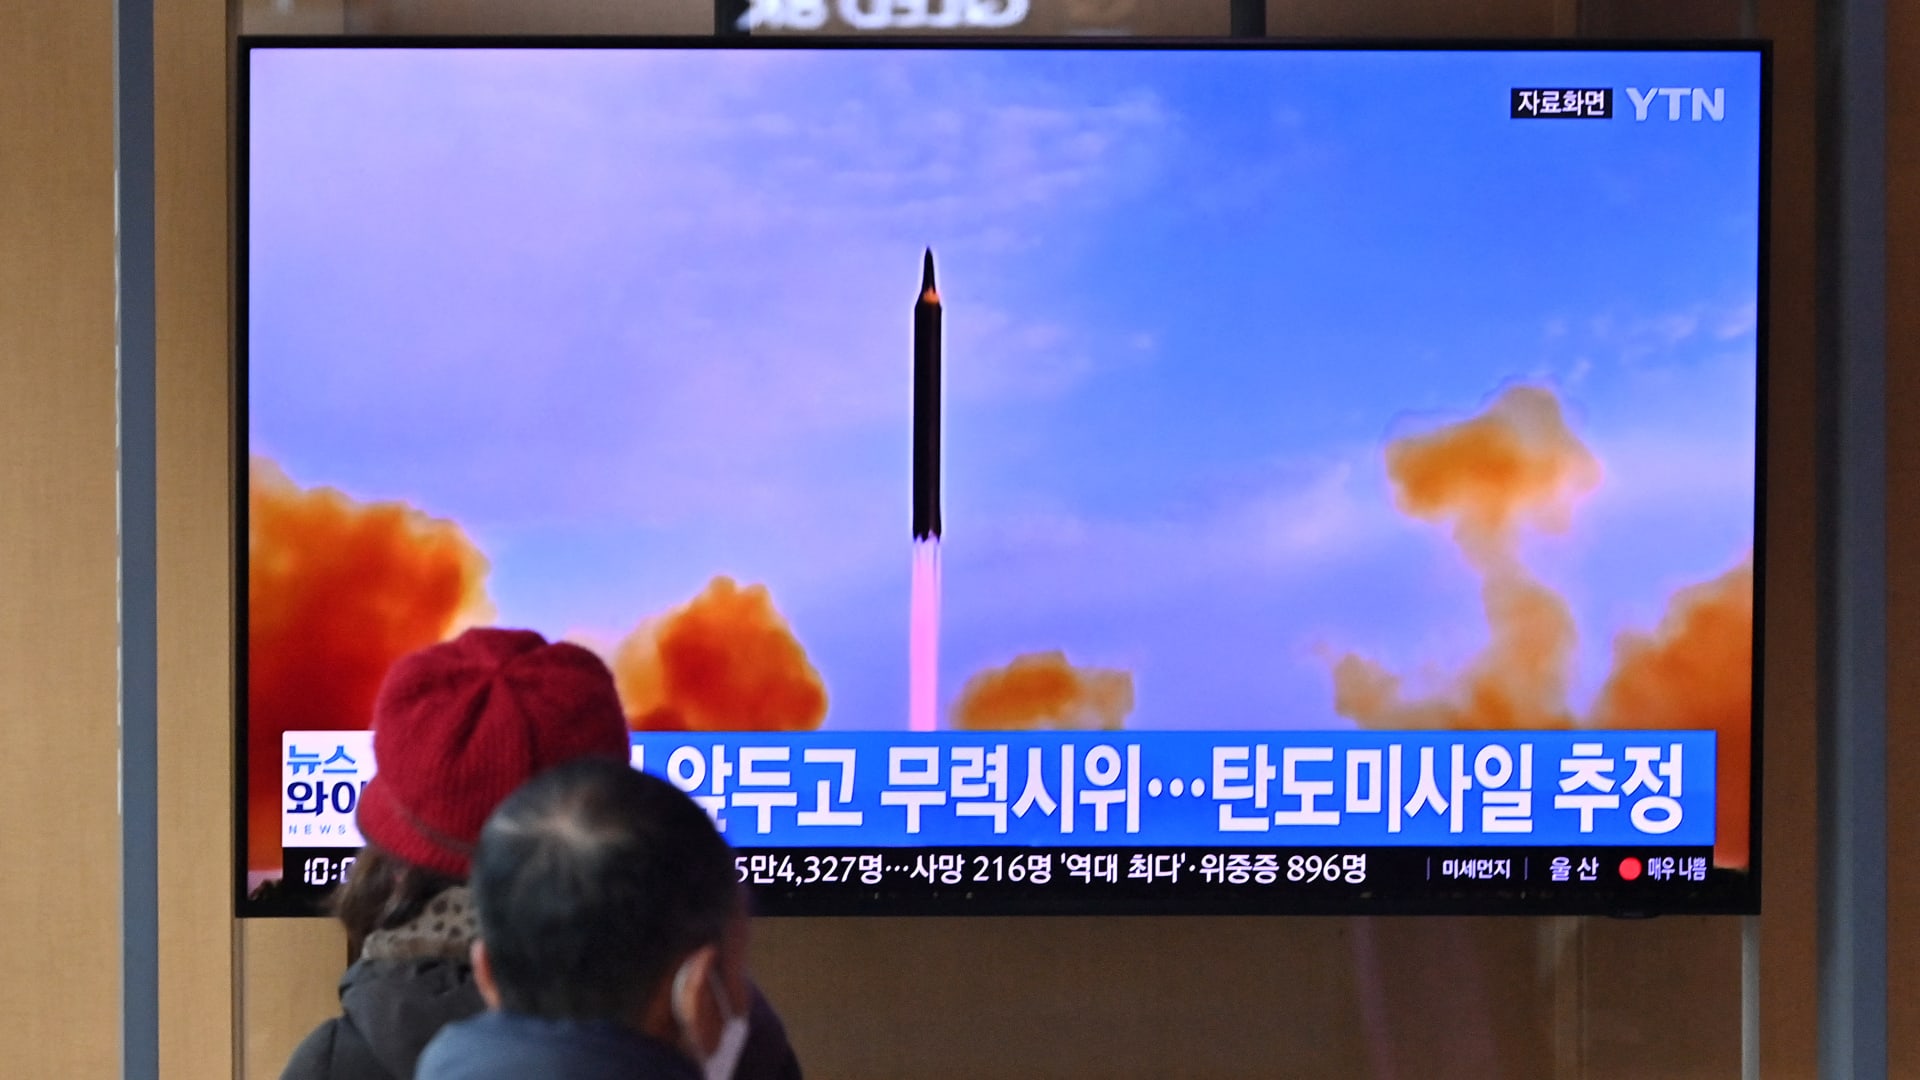 أشخاص في محطة سكة حديد بسيول يشاهدون شاشة تعرض لقطات لتجربة صاروخية لكوريا الشمالية 